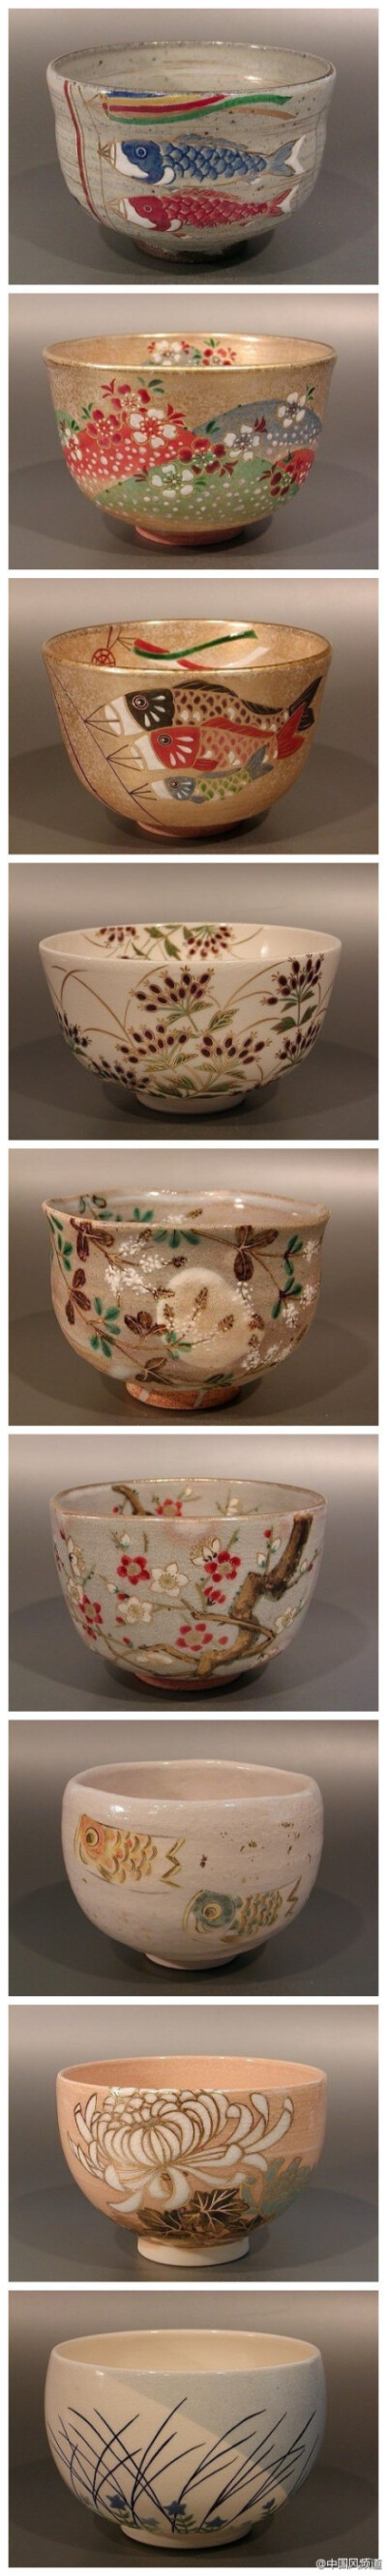 抹茶碗 , 京都陶瓷艺品,产自清水寺门前，所以有本称为“清水烧”